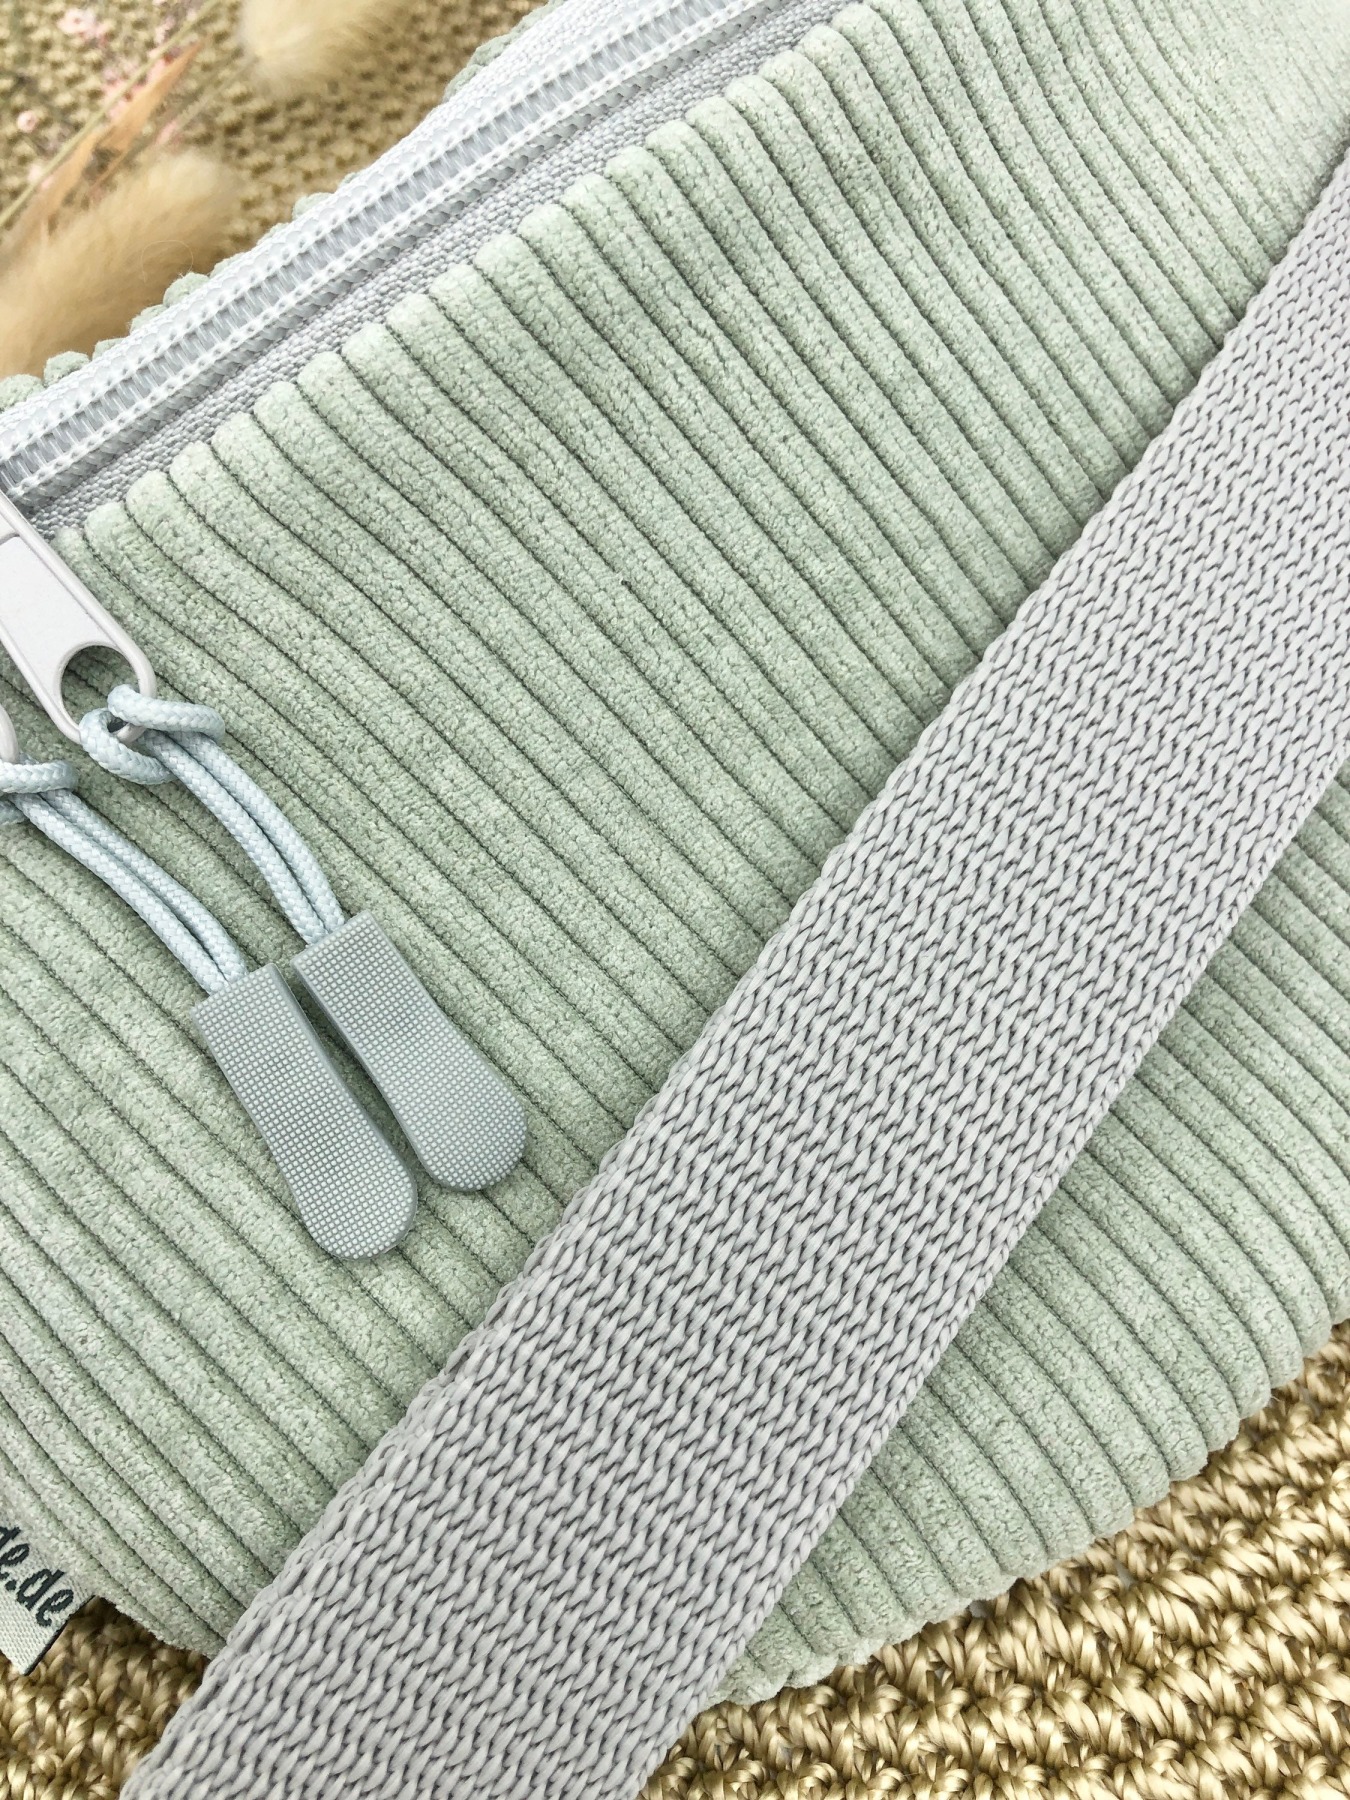 Bauchtasche Crossbag Cord salbei mit Taschengurt grau zartes grün Hipbag leicht und praktisch Kord